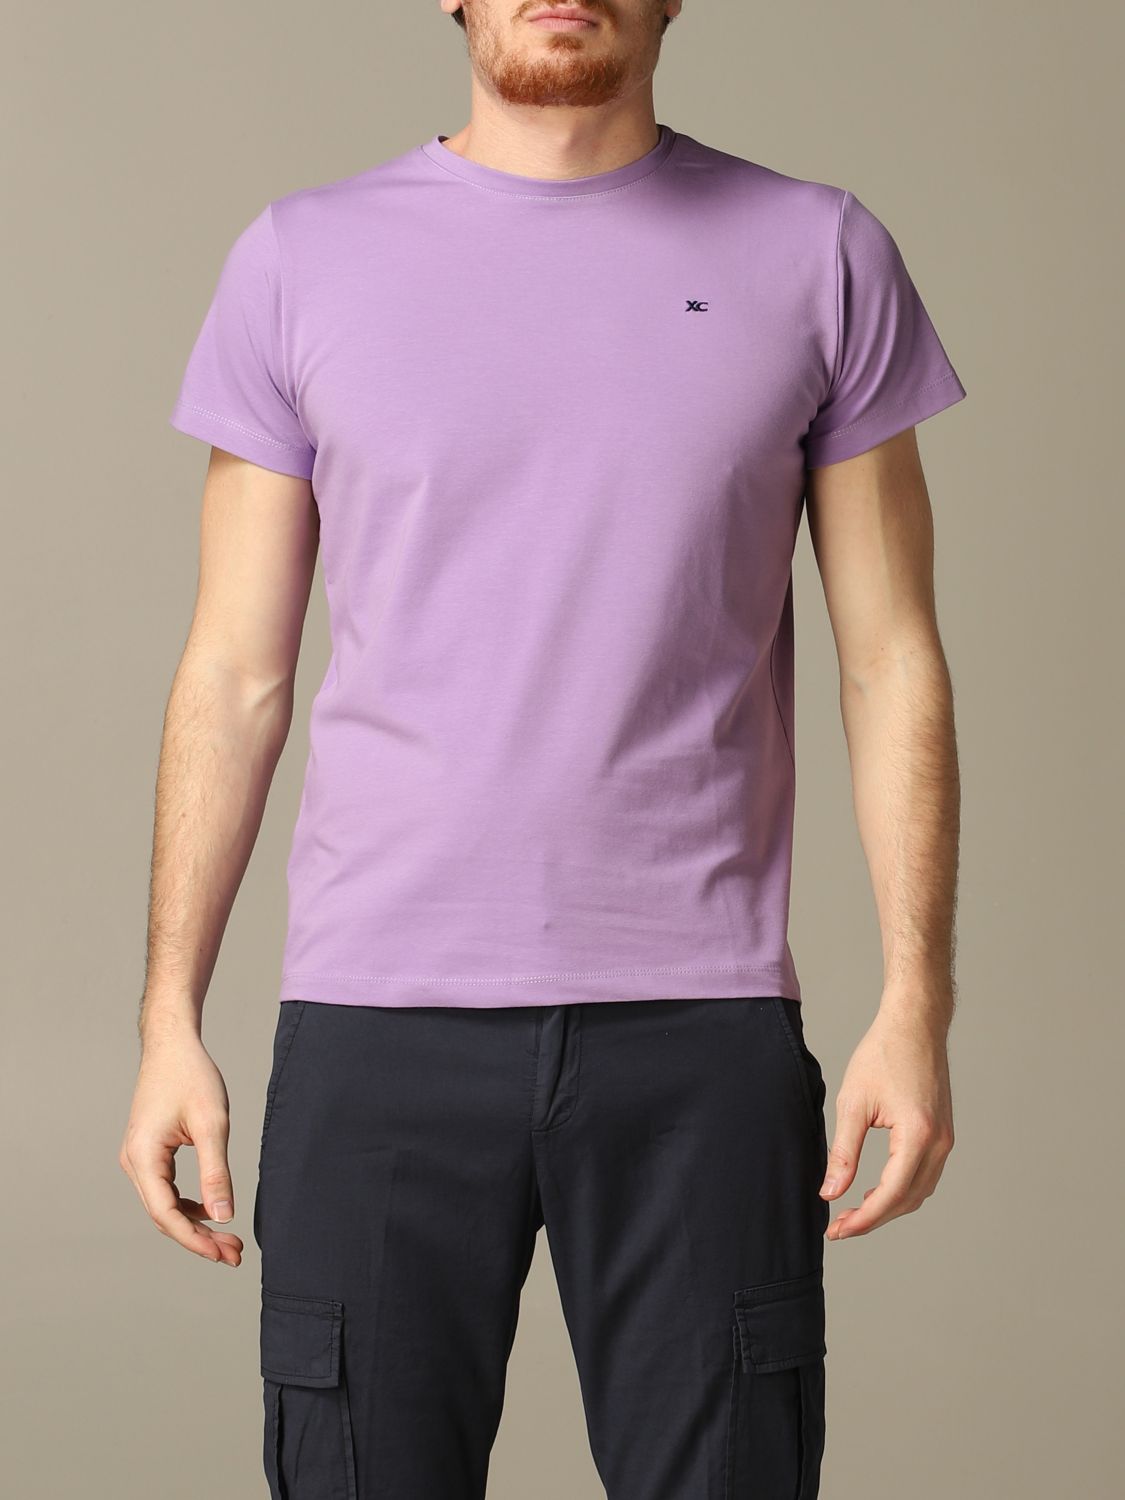 Xc T-Shirt XC Men colour Lilac